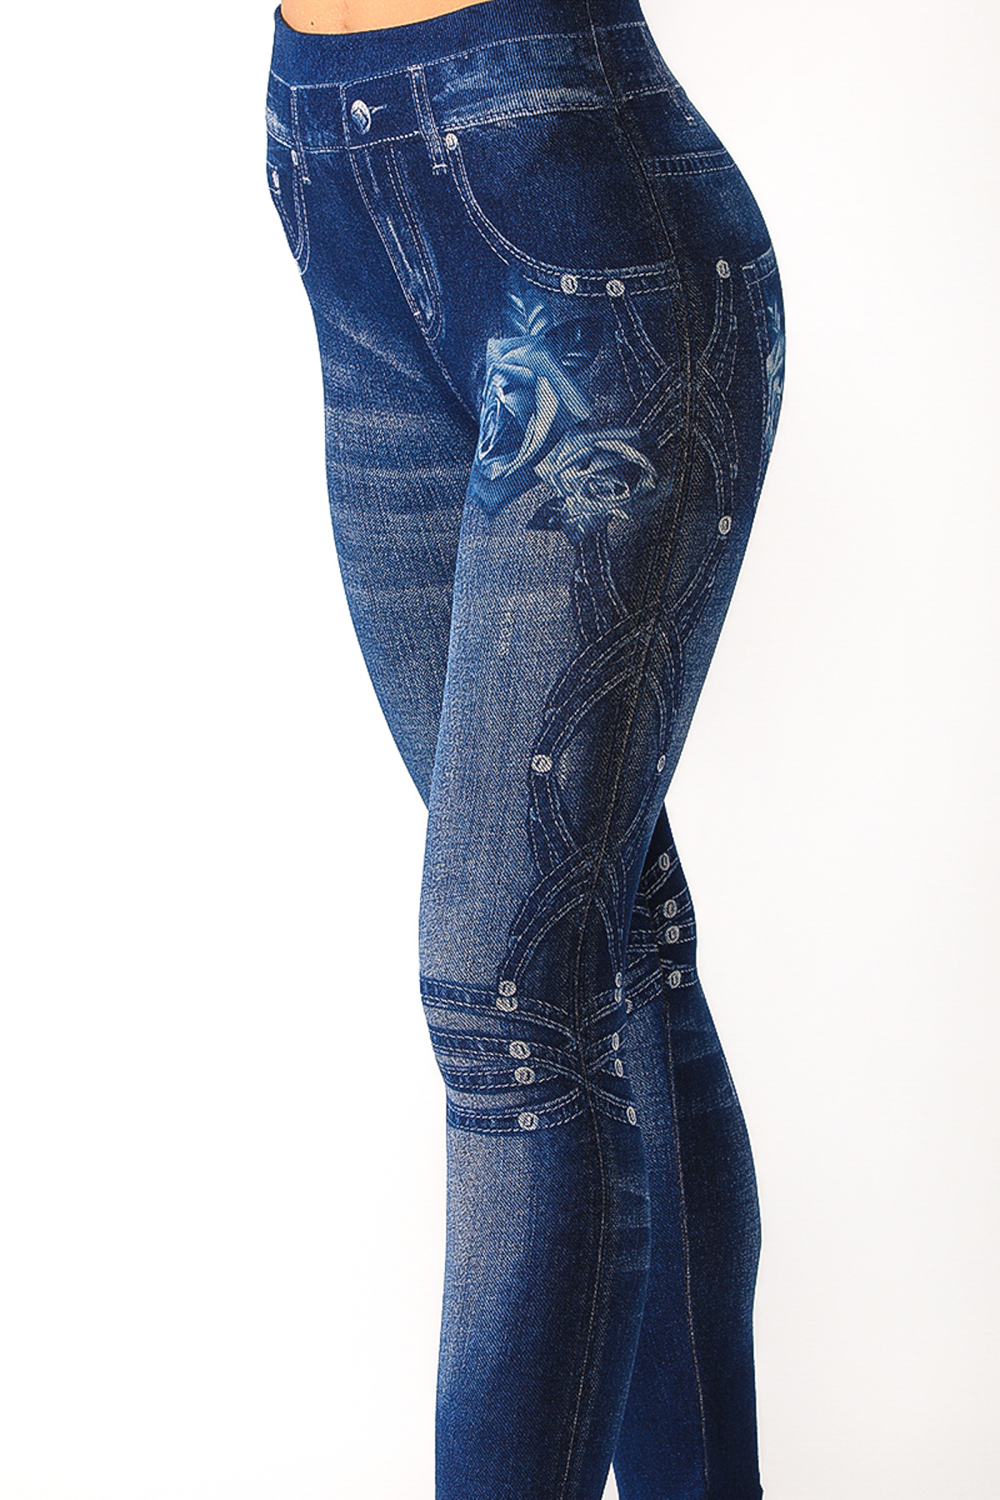 Denim Leggings with Floral Pattern On Pocket Side - 7